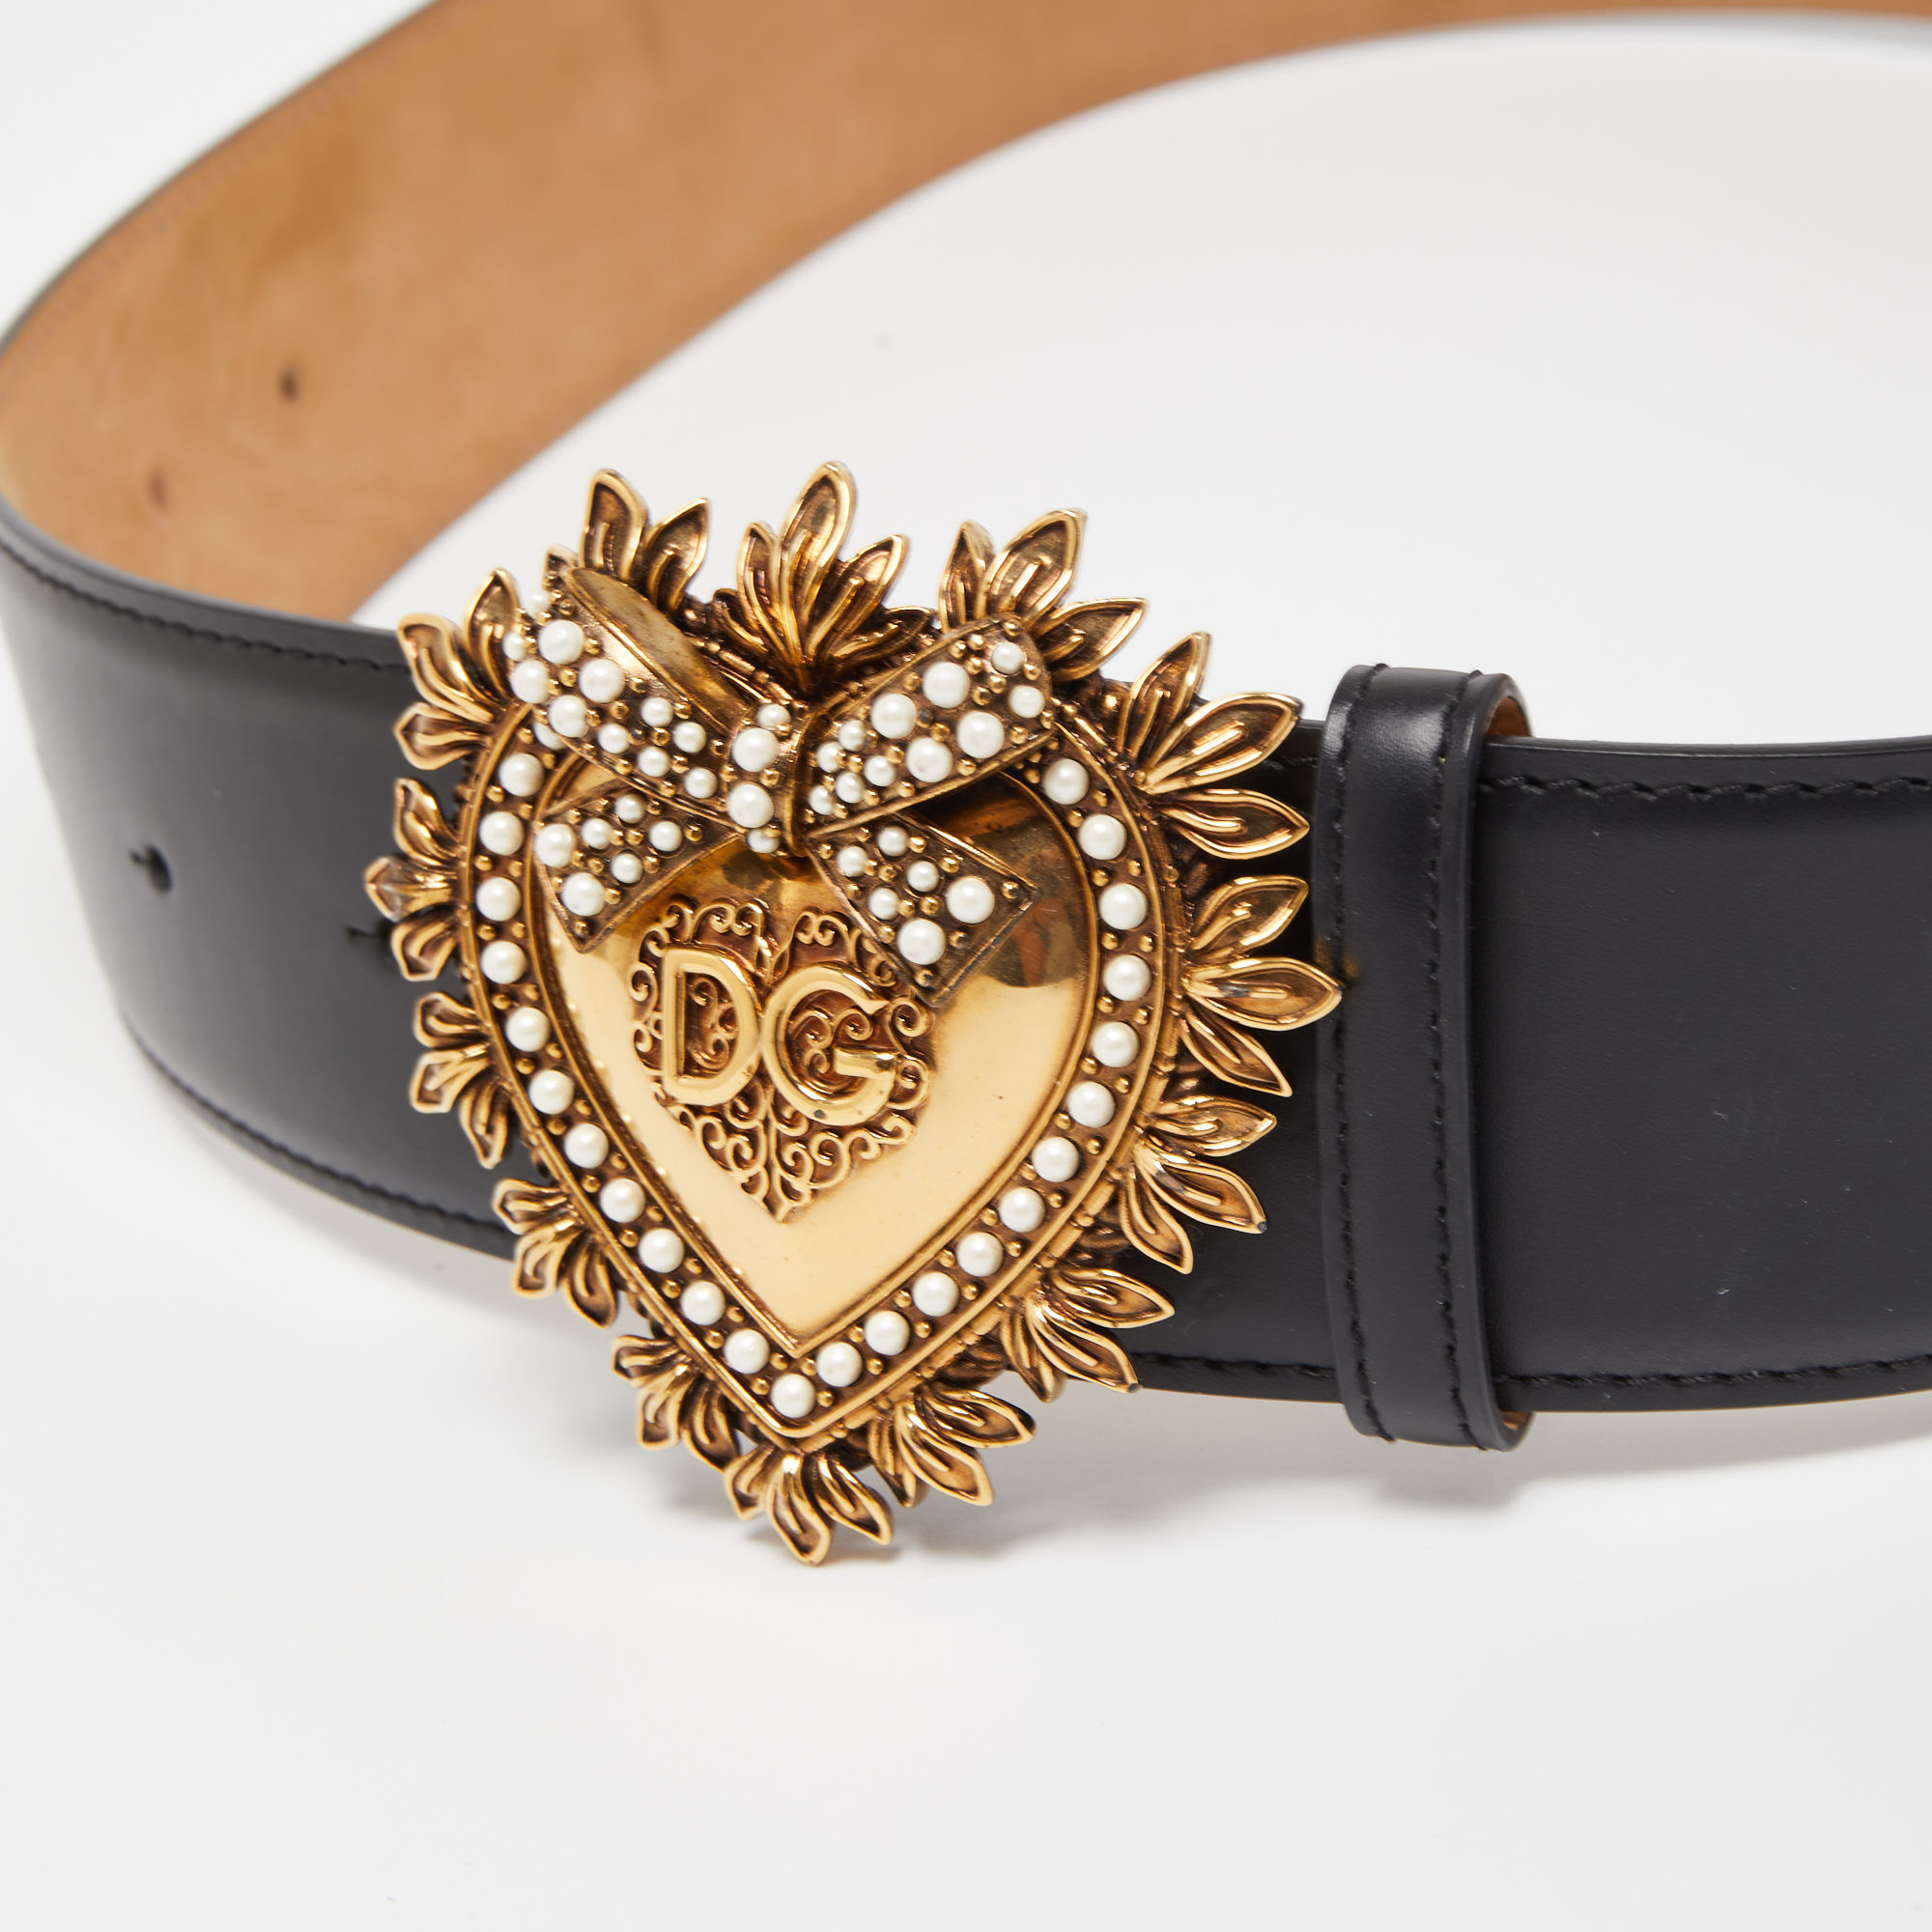 

Dolce & Gabbana Black Leather Devotion Heart Buckle Belt